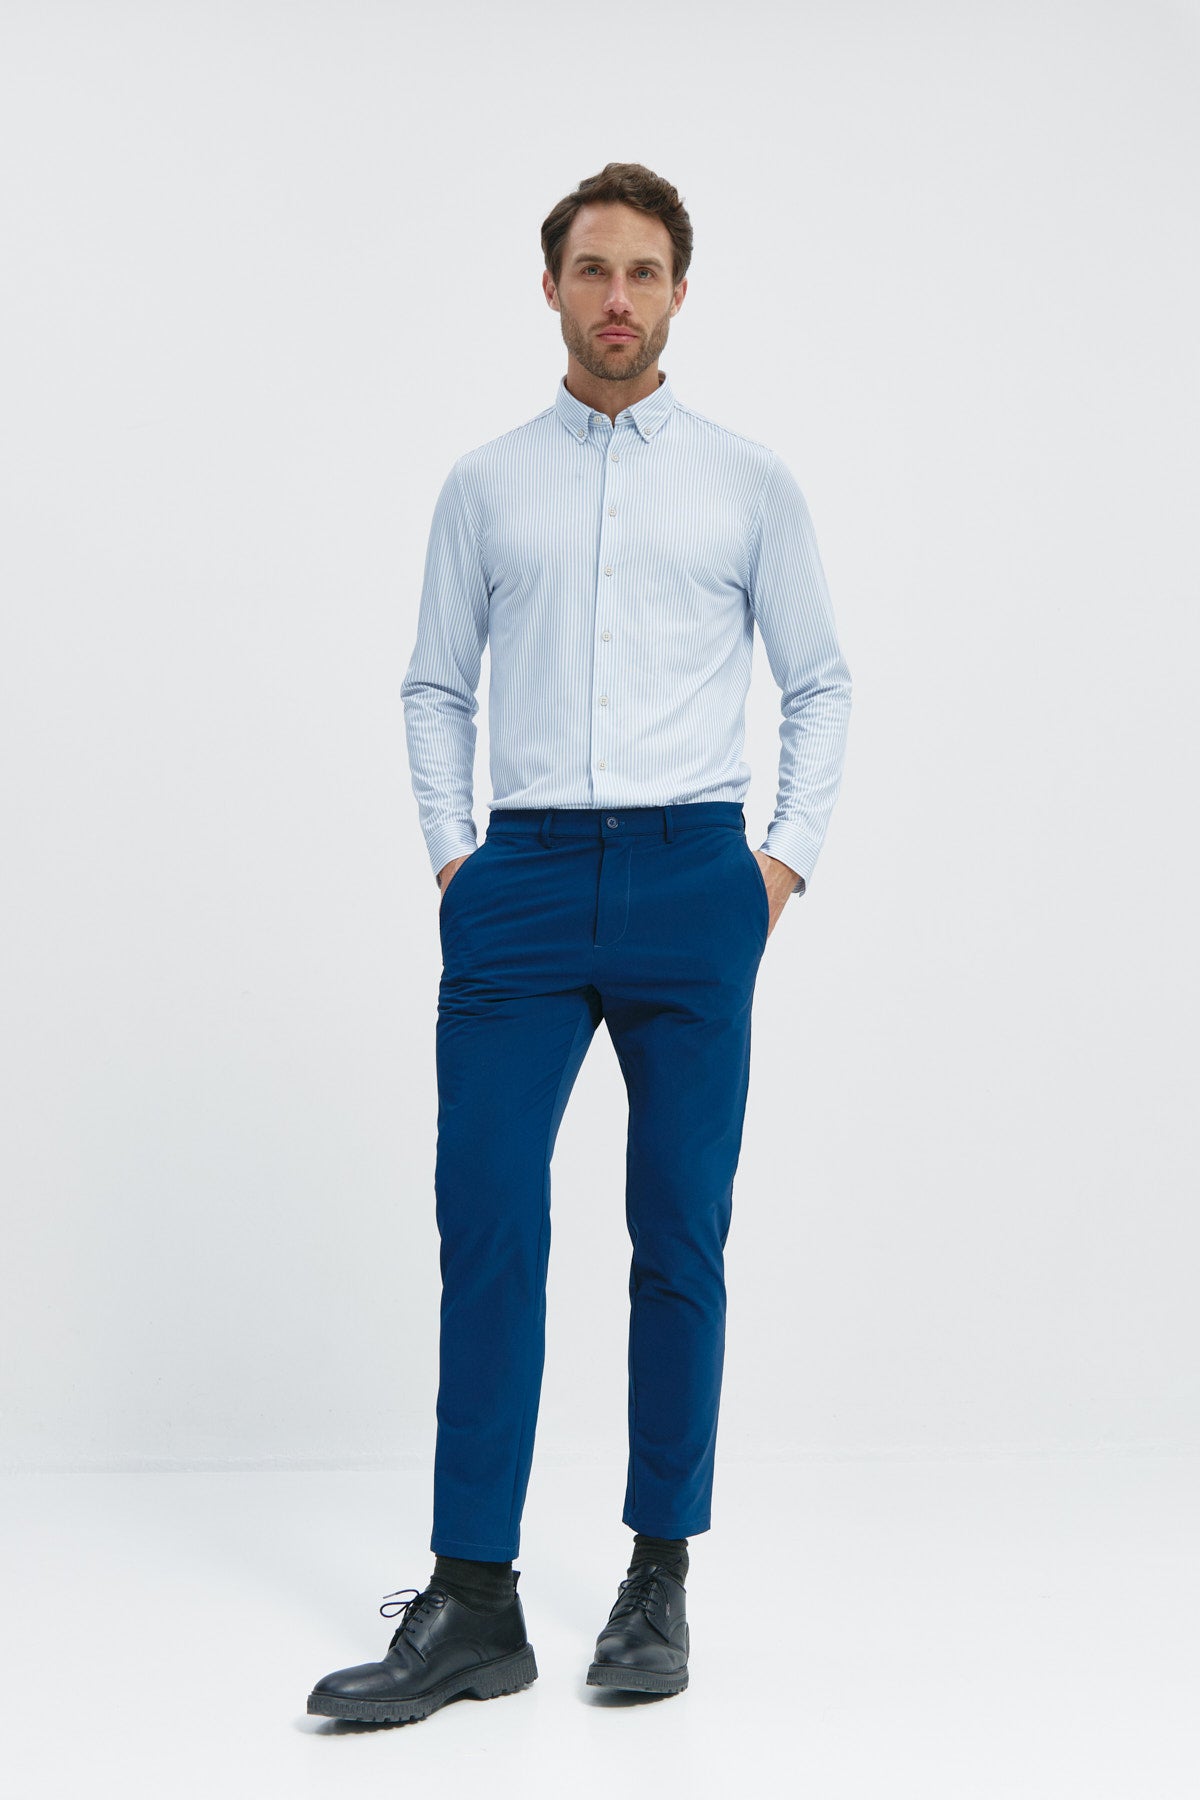 Camisa doble tono azul regular de Sepiia, estilo y comodidad en una prenda duradera. Frente de cuerpo entero.